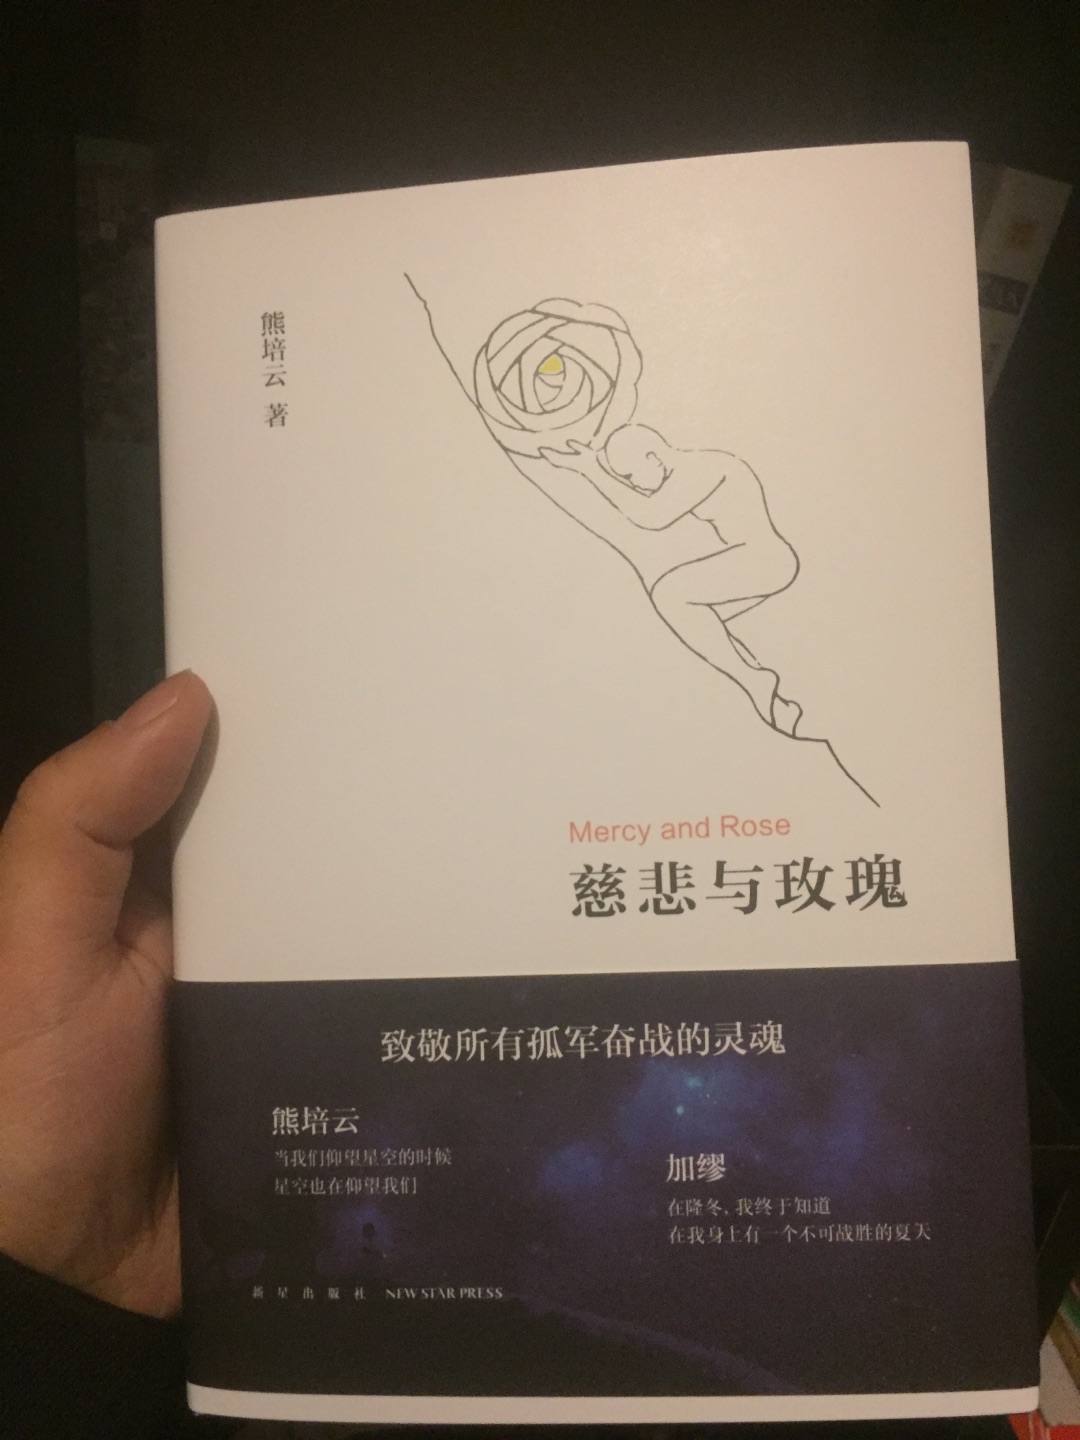 熊培云先生的书还是不错的，值得阅读。